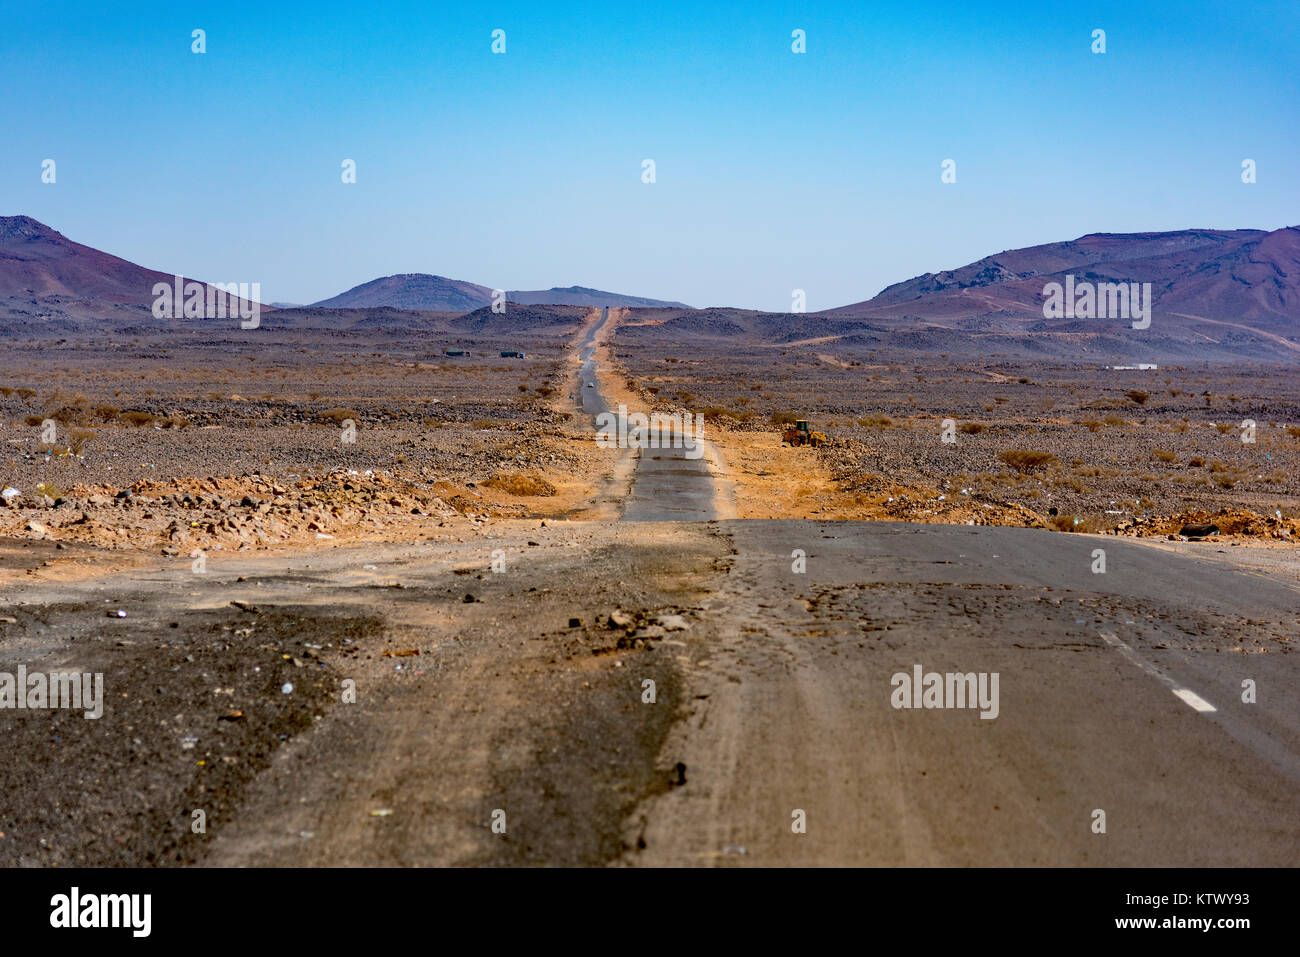 Chemin d'exploitation minière du désert entre Jeddah et Médine, province de La Mecque, en Arabie Saoudite. Banque D'Images